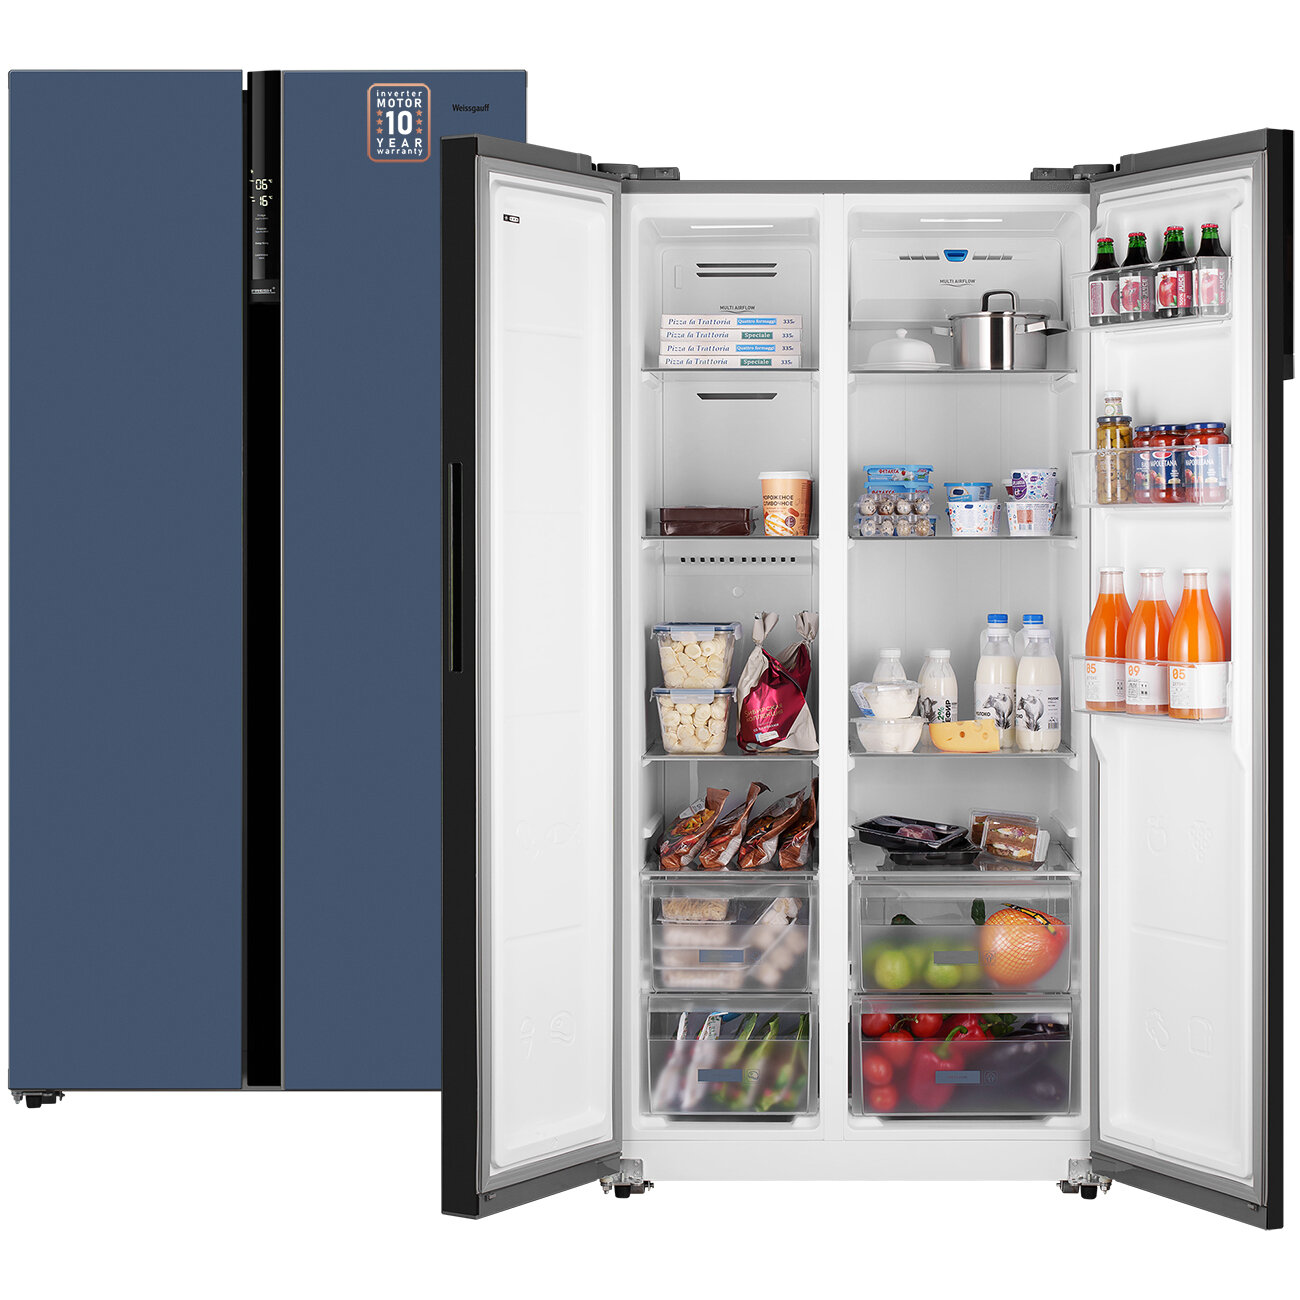 Отдельностоящий холодильник с инвертором Weissgauff Wsbs 600 NoFrost Inverter Blue Glass Side by Side двухдверный, 3 года гарантии, Мощность замораживания 12 кг сутки, Объём 584 л, Сенсорное управление, Цифровой дисплей, Суперзаморозка, LED освещение, A++